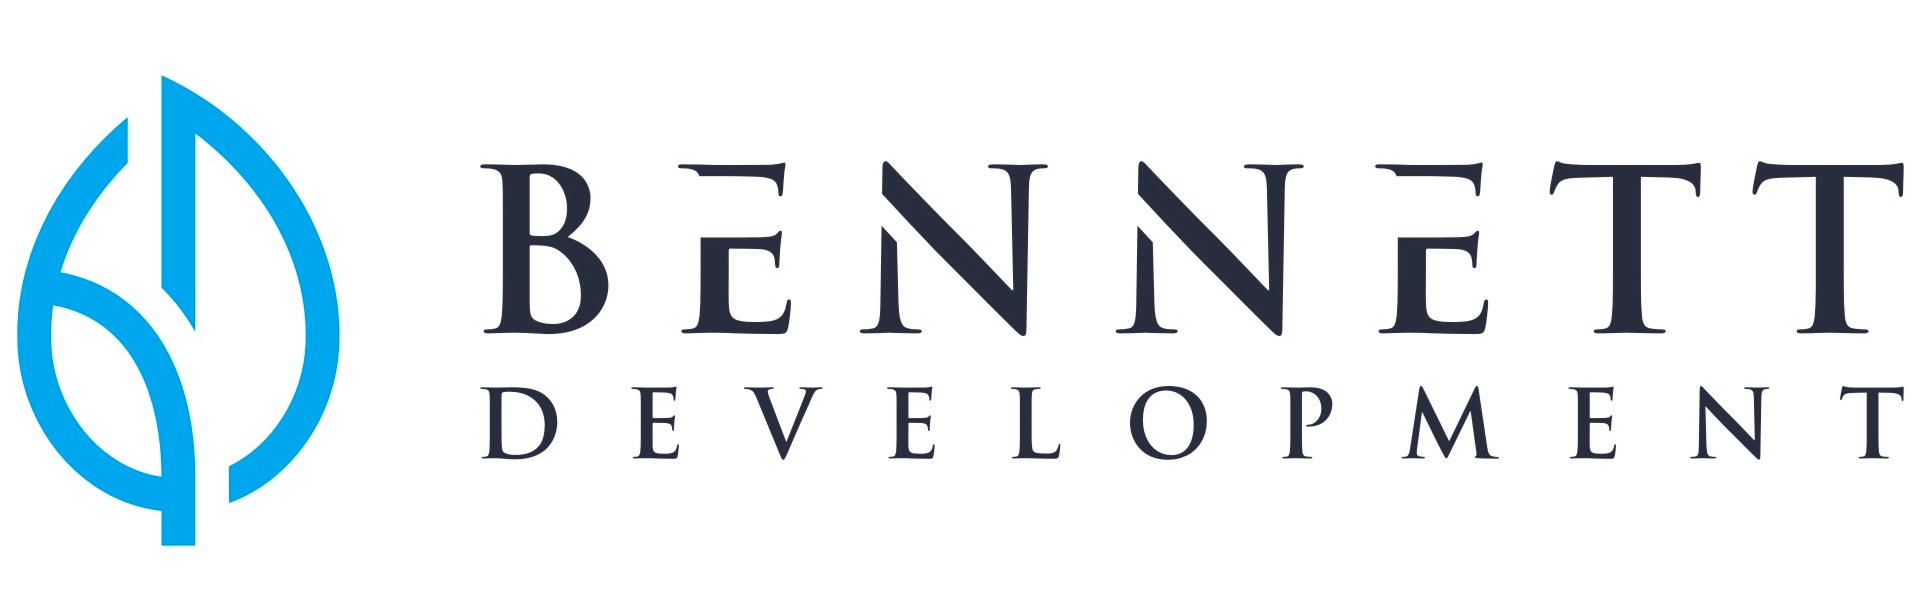 Bennett Development